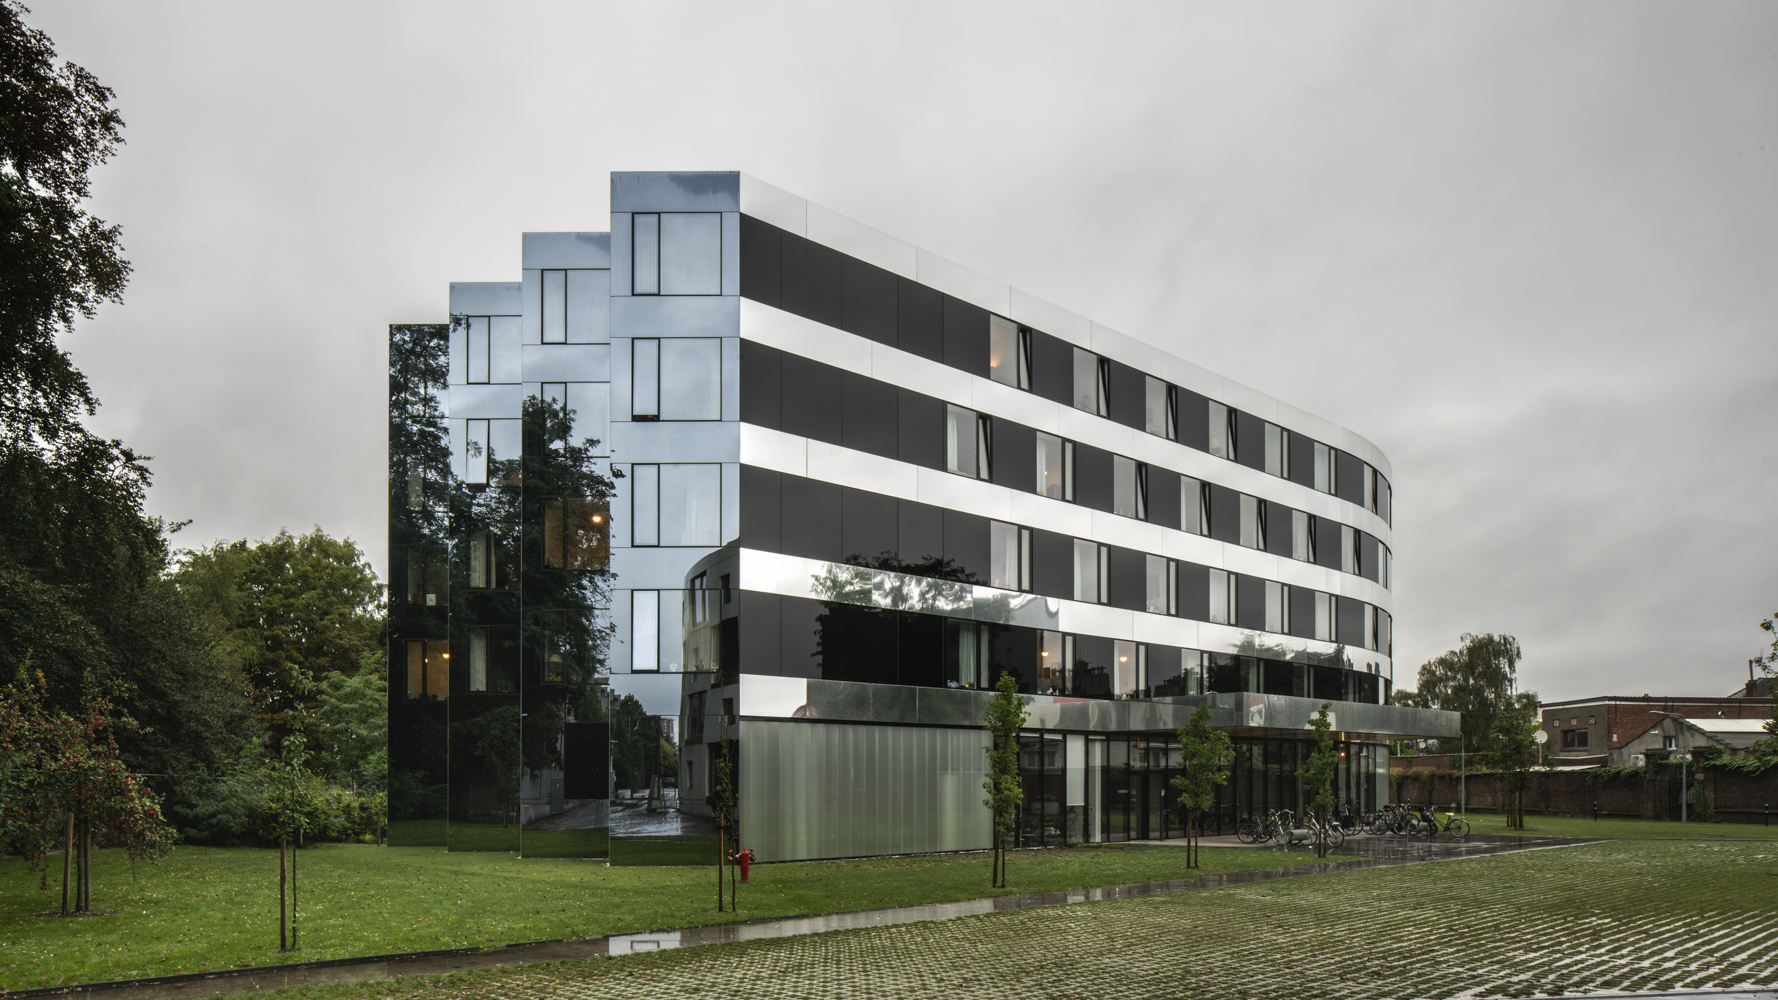 Centro residencial para mayores GZA, Amberes, Bélgica  |  Xavieer de Geyter, arquitecto